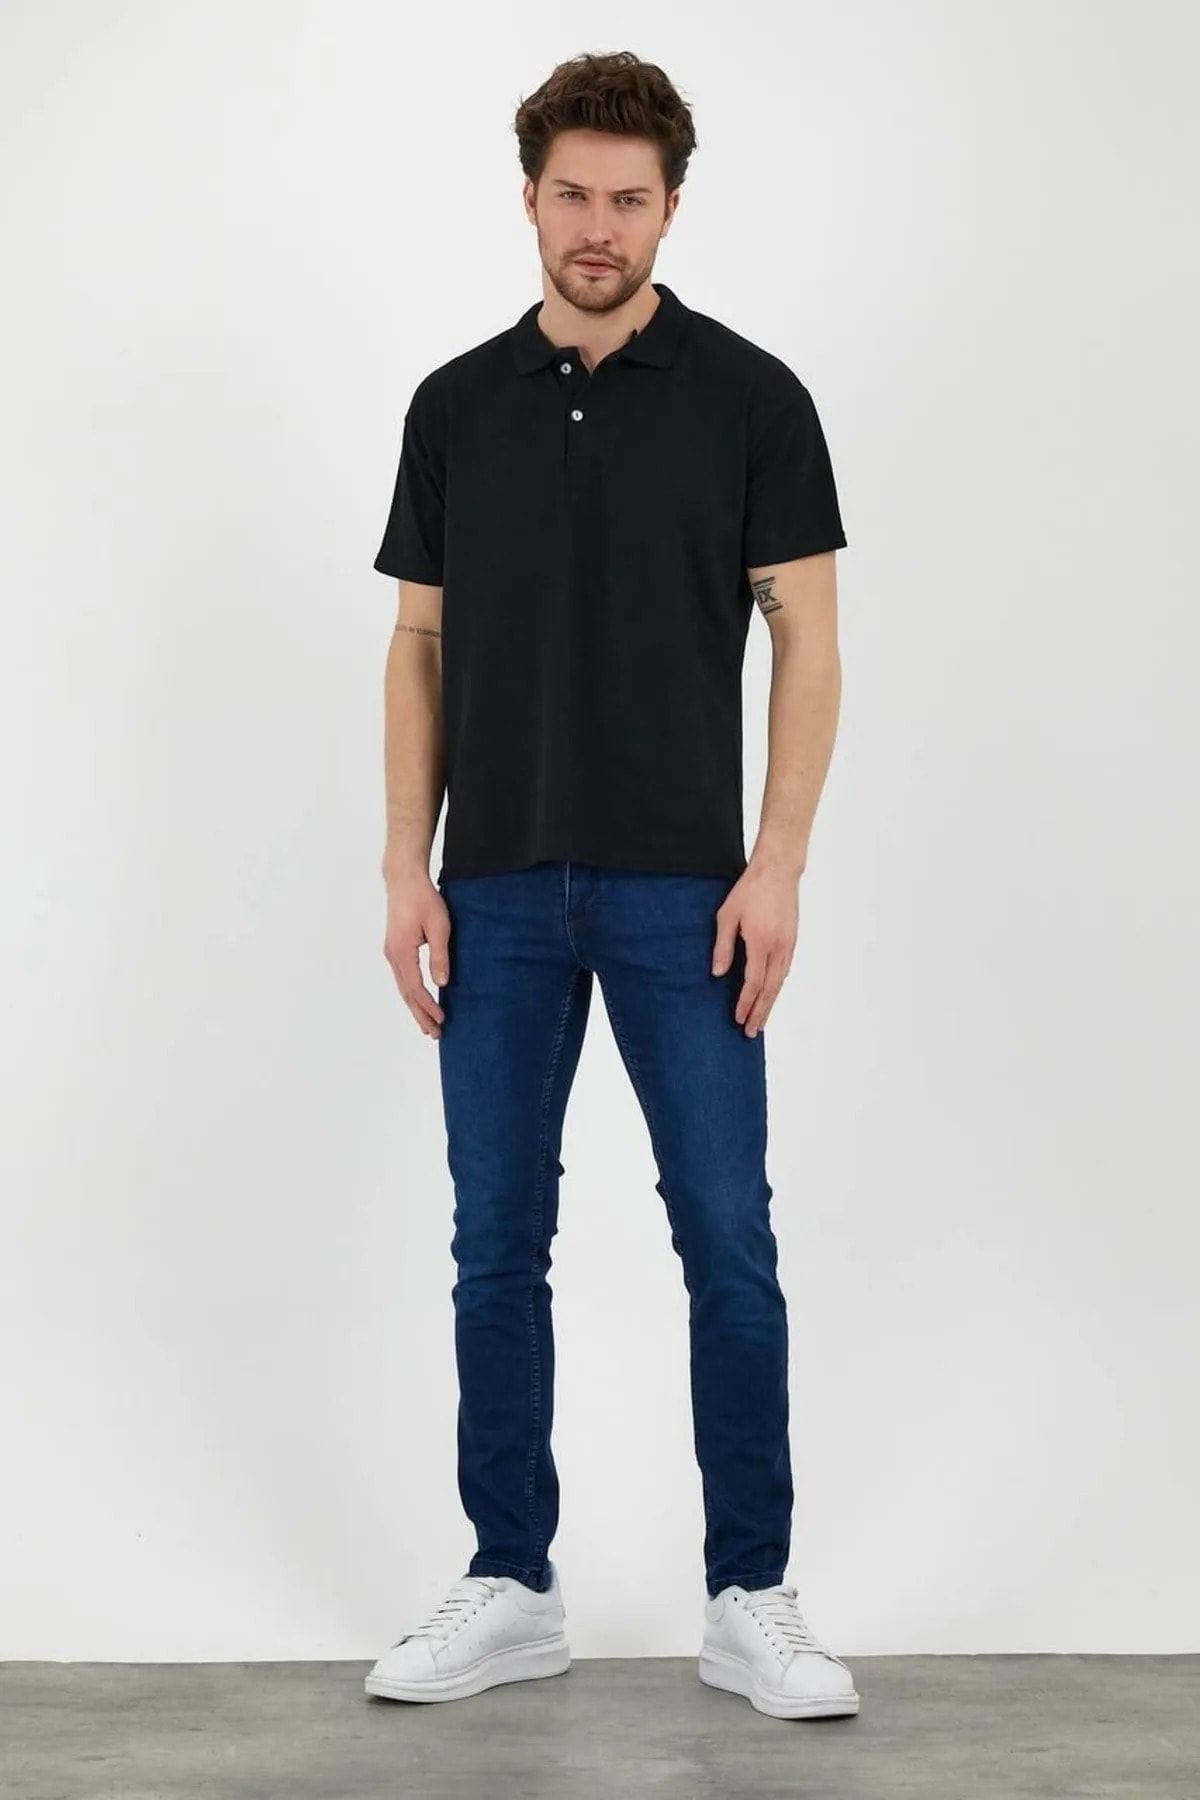 EKZMODA Siyah Slim Fit Erkek Polo Yaka Tişört - Kadin Tisort T-shirt - Erkek Tisort T-shirt